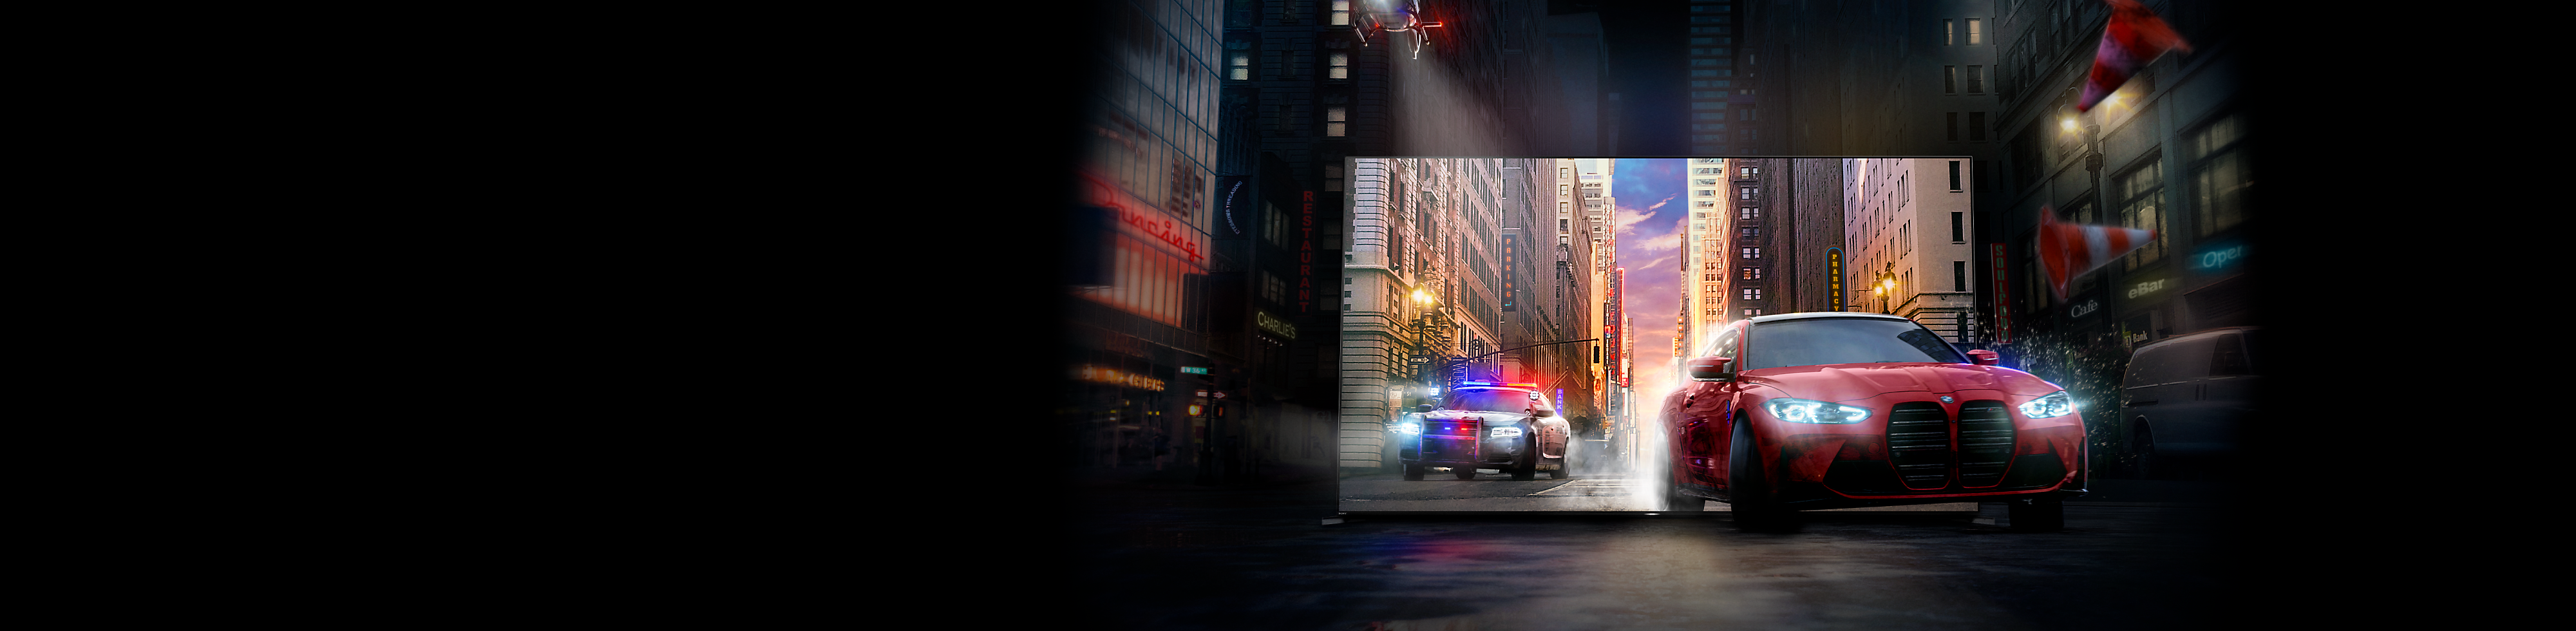 Červené auto sledované policajným autom vychádzajúce z obrazovky televízora BRAVIA na ulicu